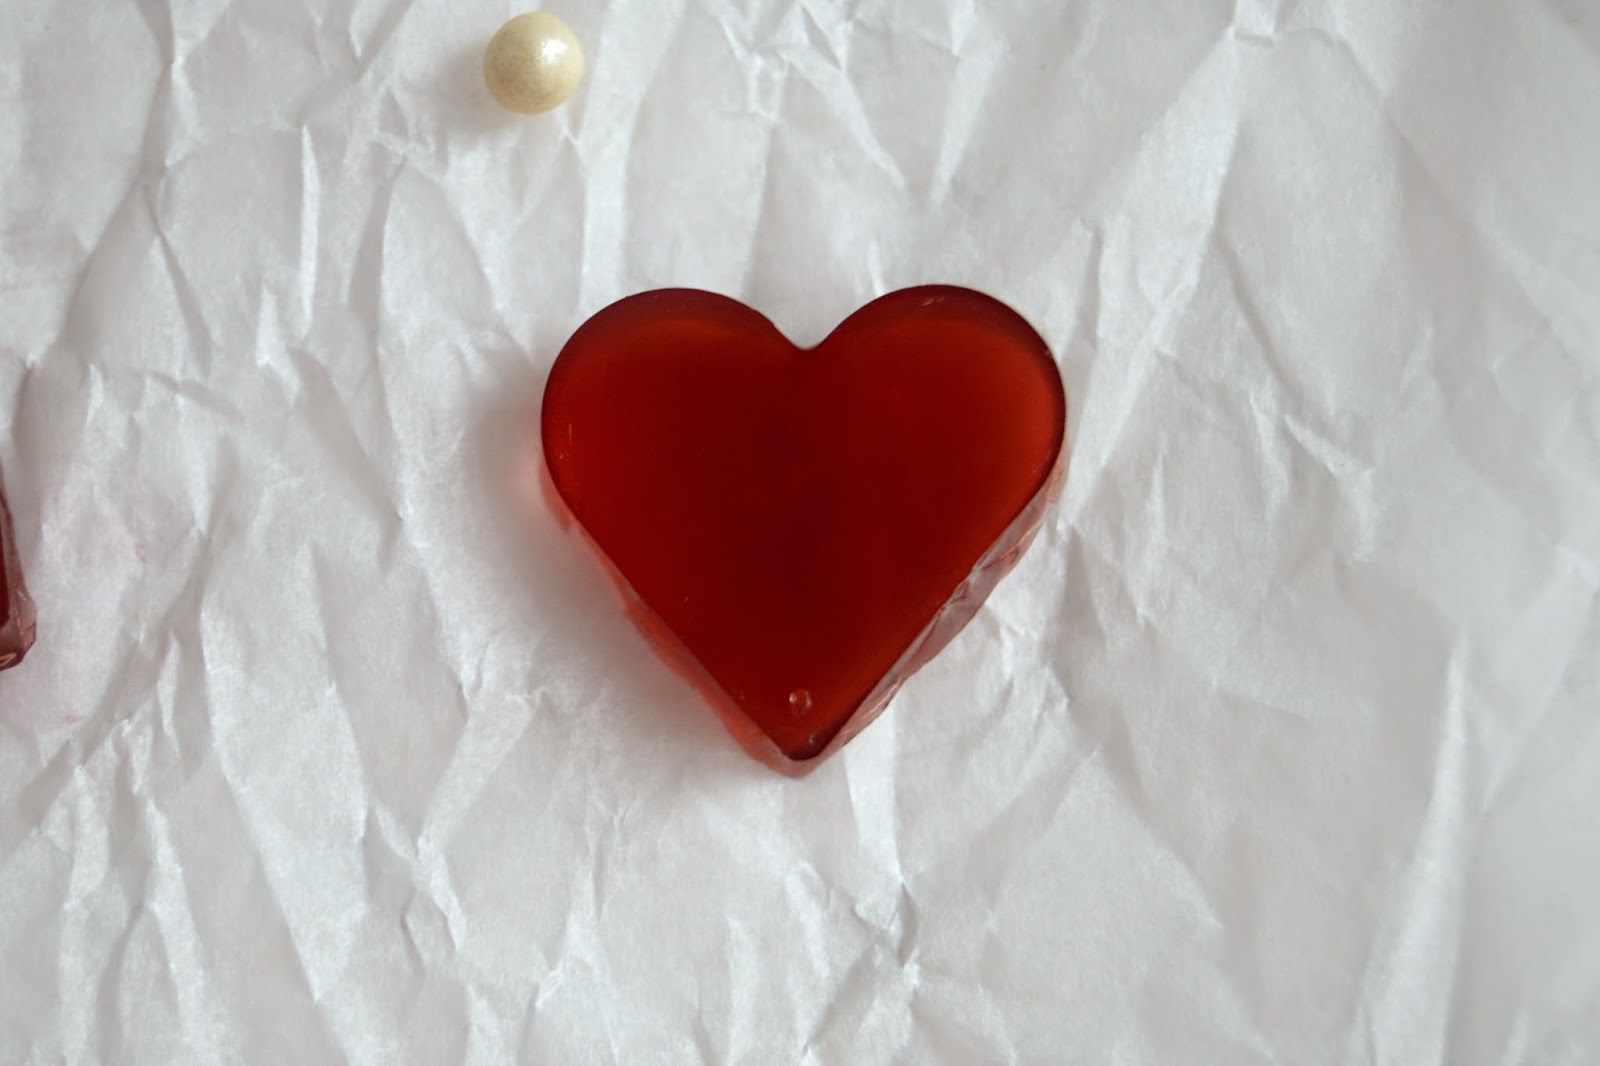 jelly, jelly-hearts, jelly-Herzen, Herz, herzen, hearts, valentinstag, valentine's day, valentine, sweets, naschen, süßigkeit, gummibärli, geschenk, present, überraschung, gift, geschenke aus der küche, blog, xenobiophilia, lifestyleblog